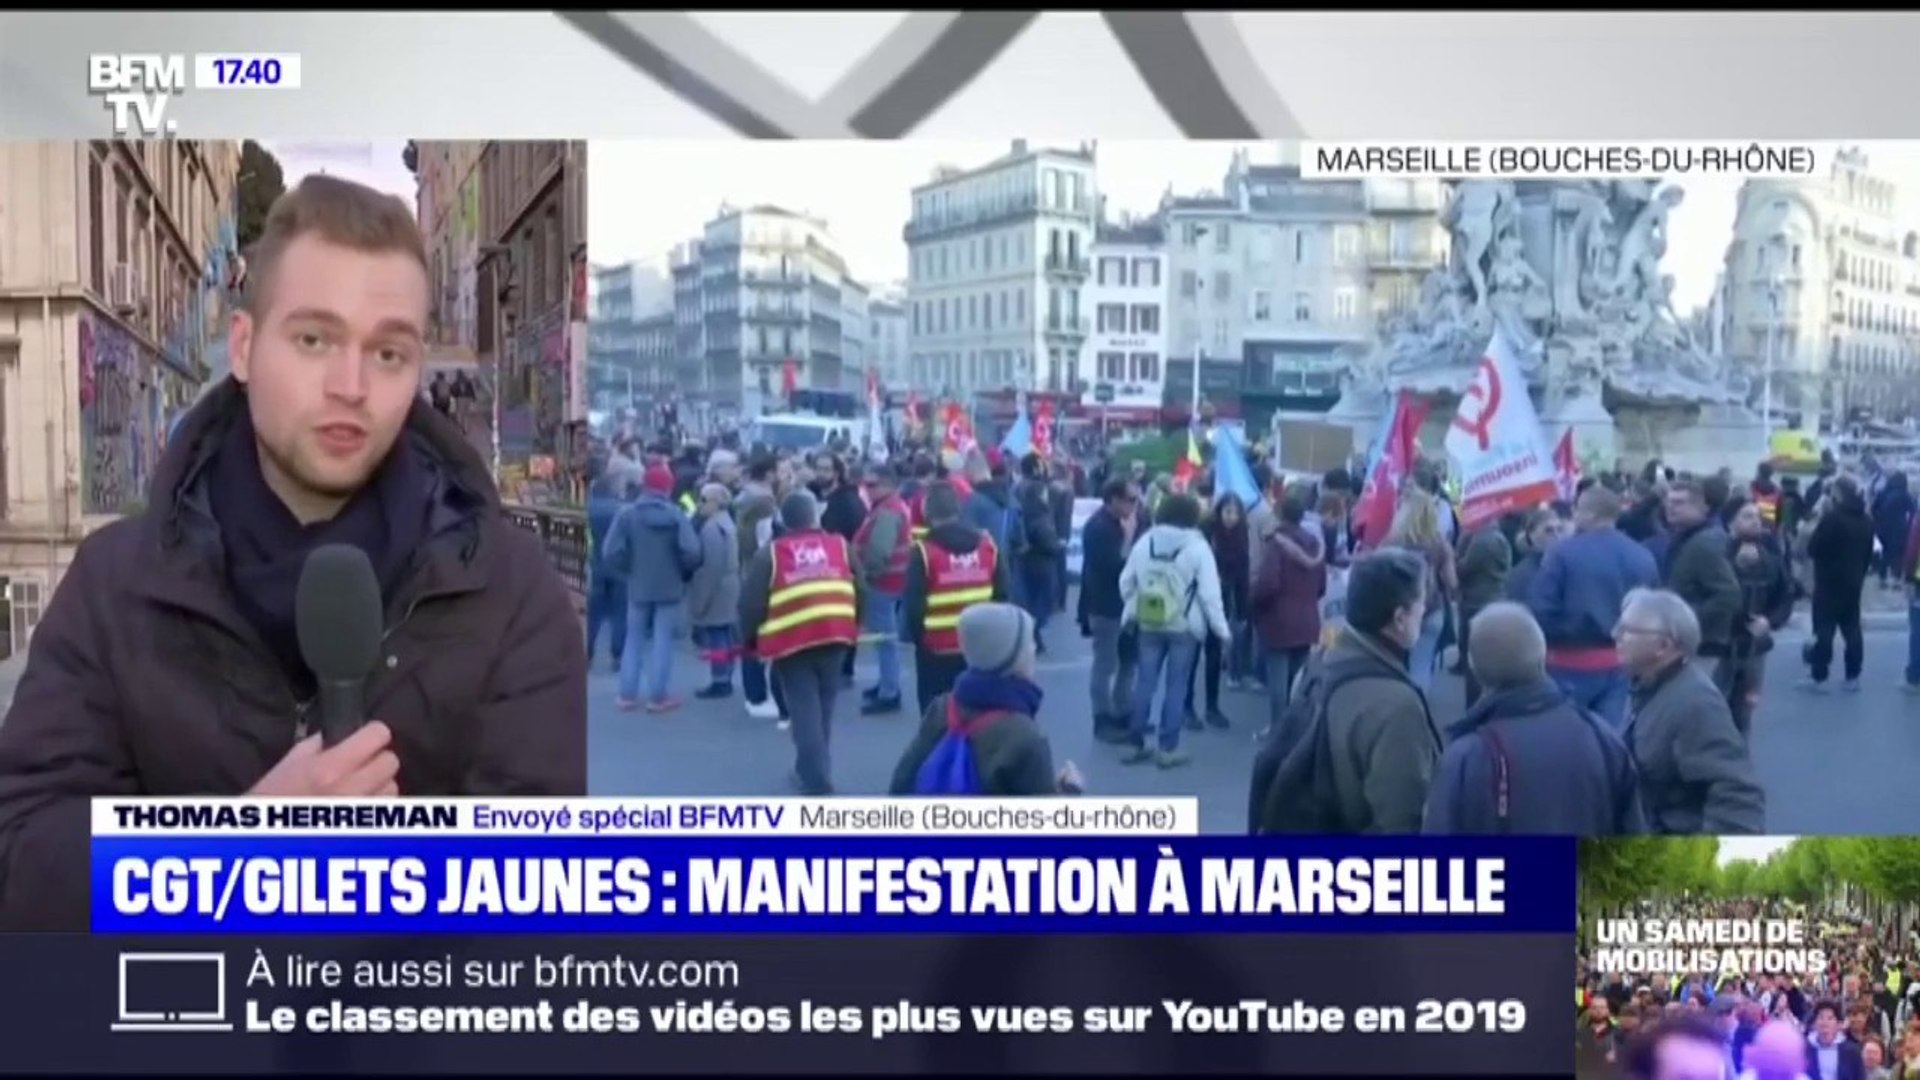 CGT/gilets jaunes: forte mobilisation à Marseille - Vidéo Dailymotion